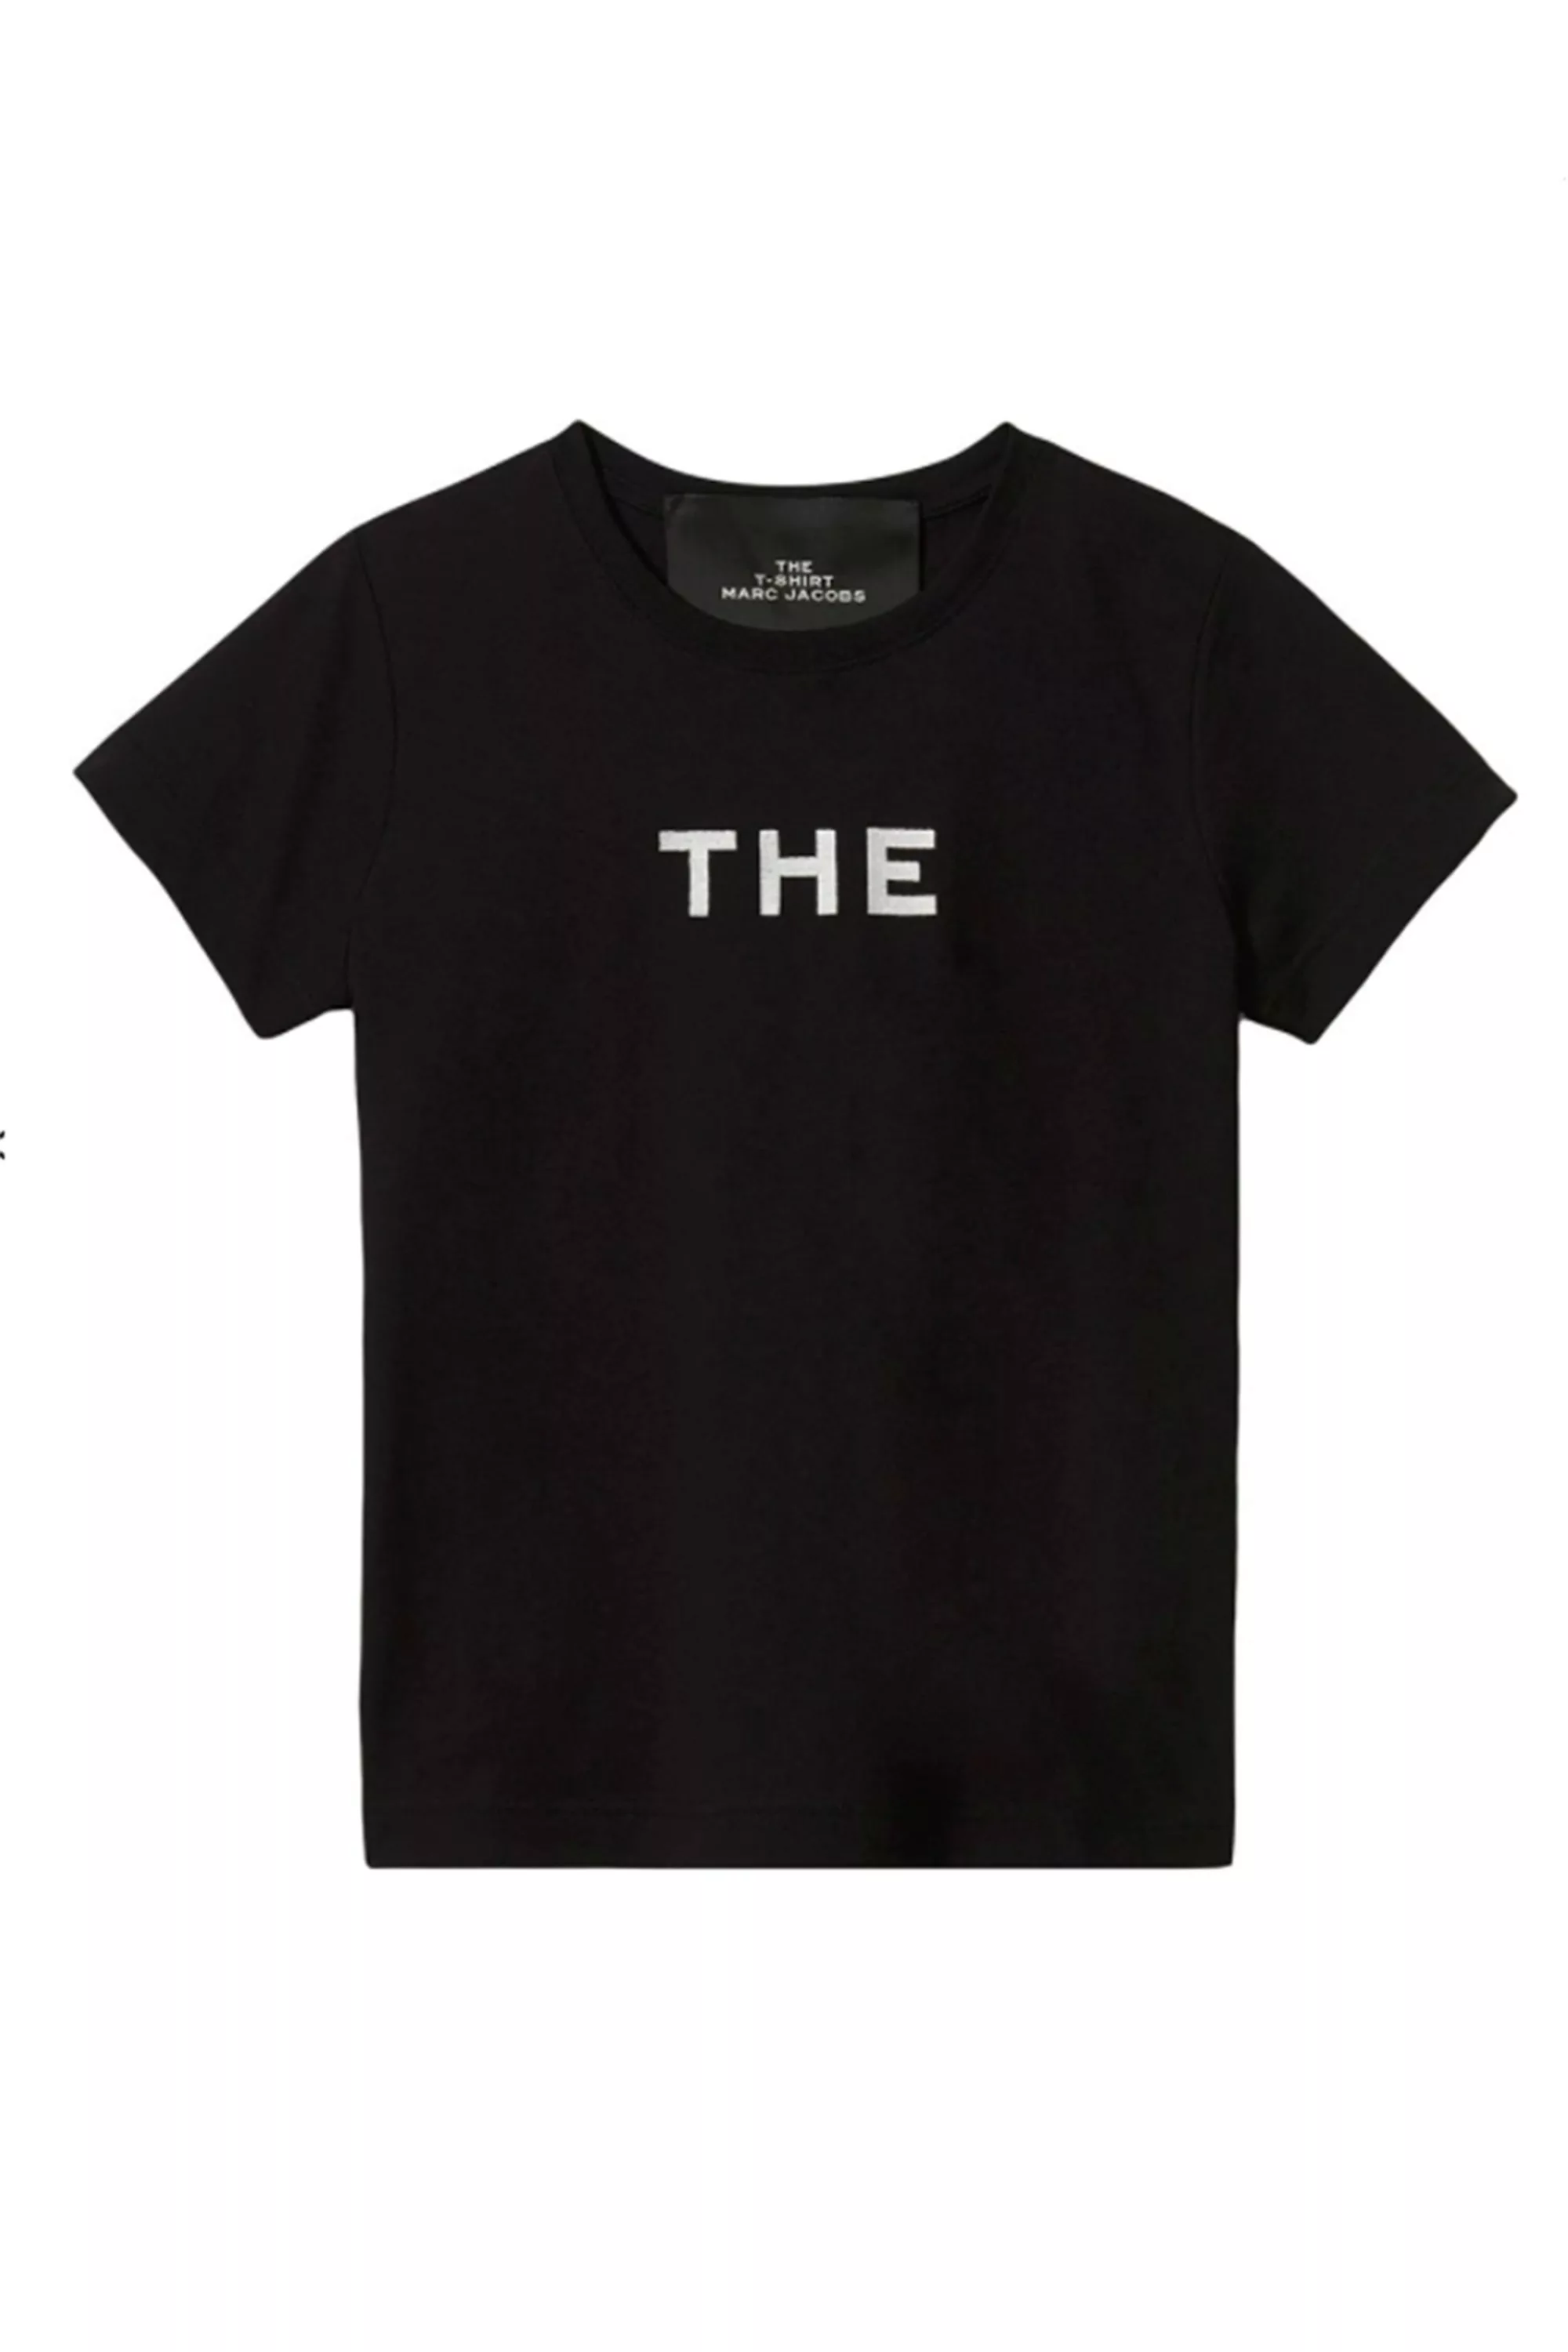 MARC JACOBS T-Shirt Unisex günstig online kaufen